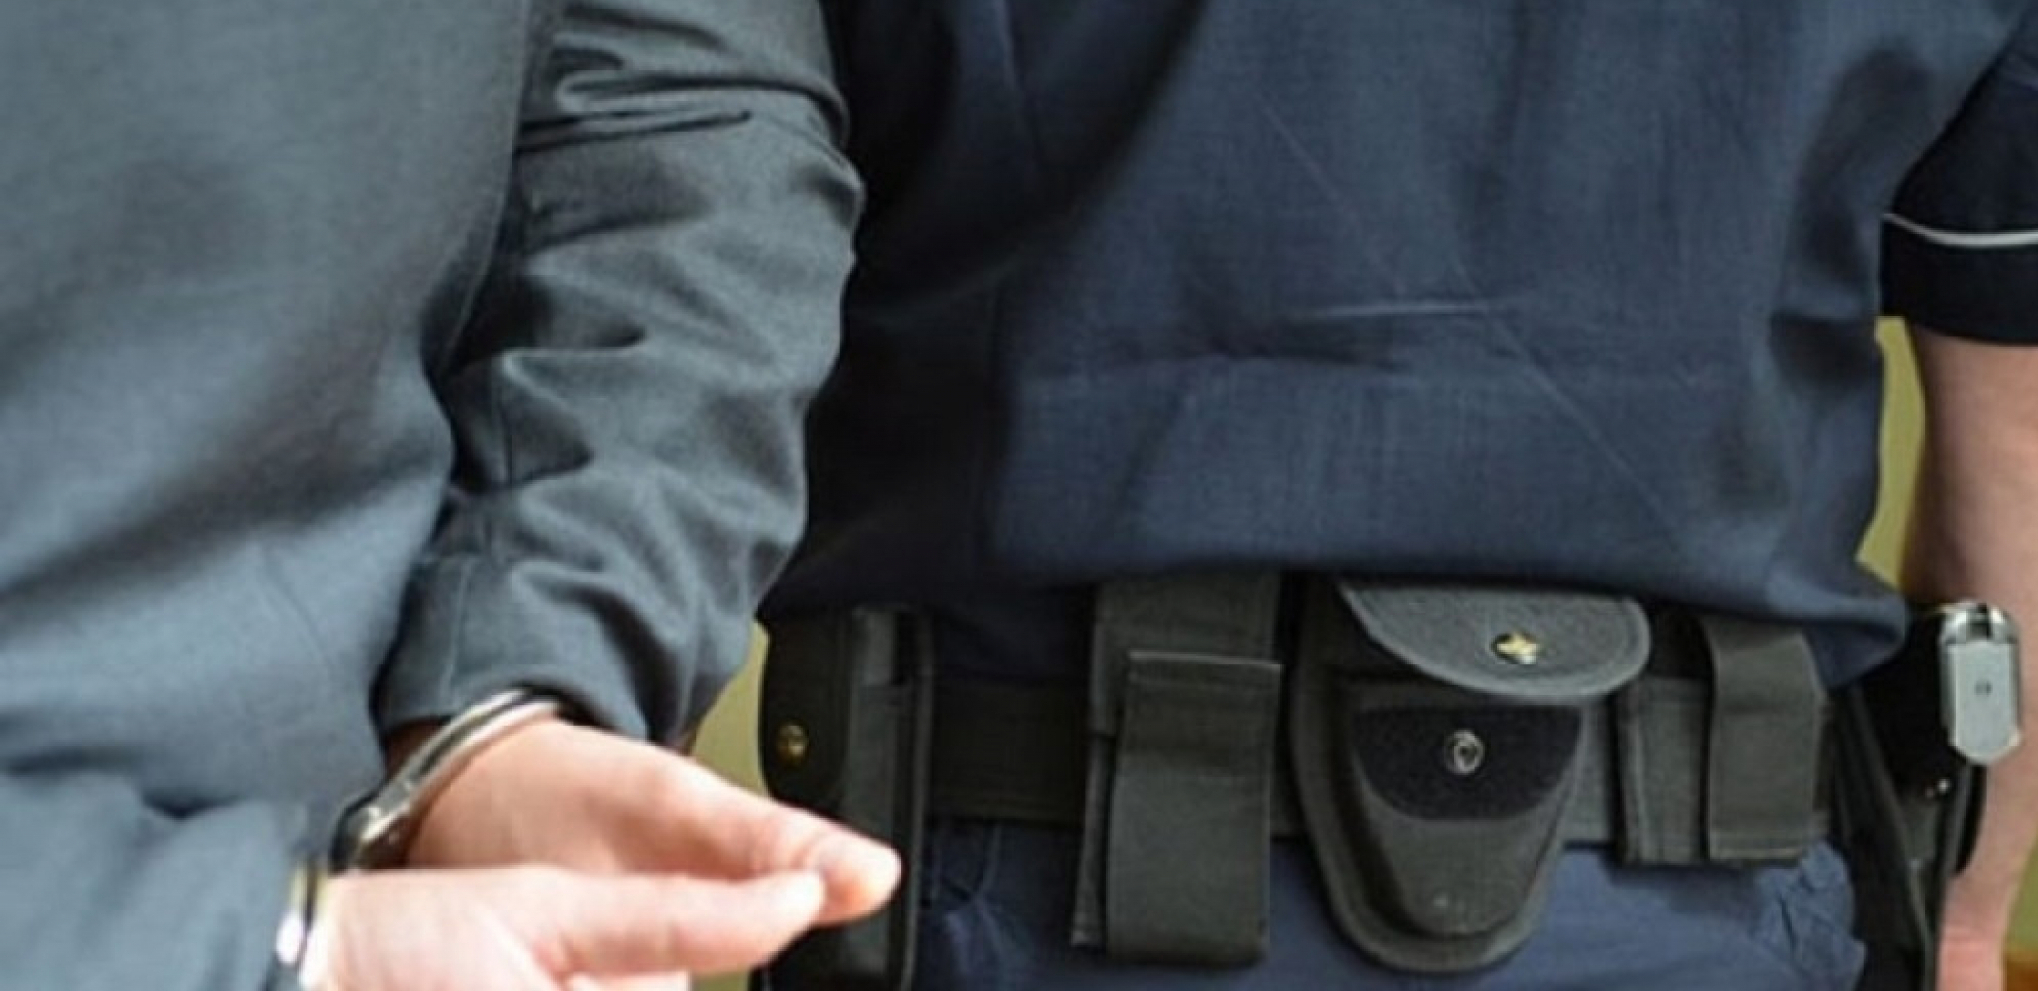 KILOGRAM HEROINA U KUĆI Uhapšen sedamnaestogodišnjak u Valjevu, proizvodio i prodavao drogu